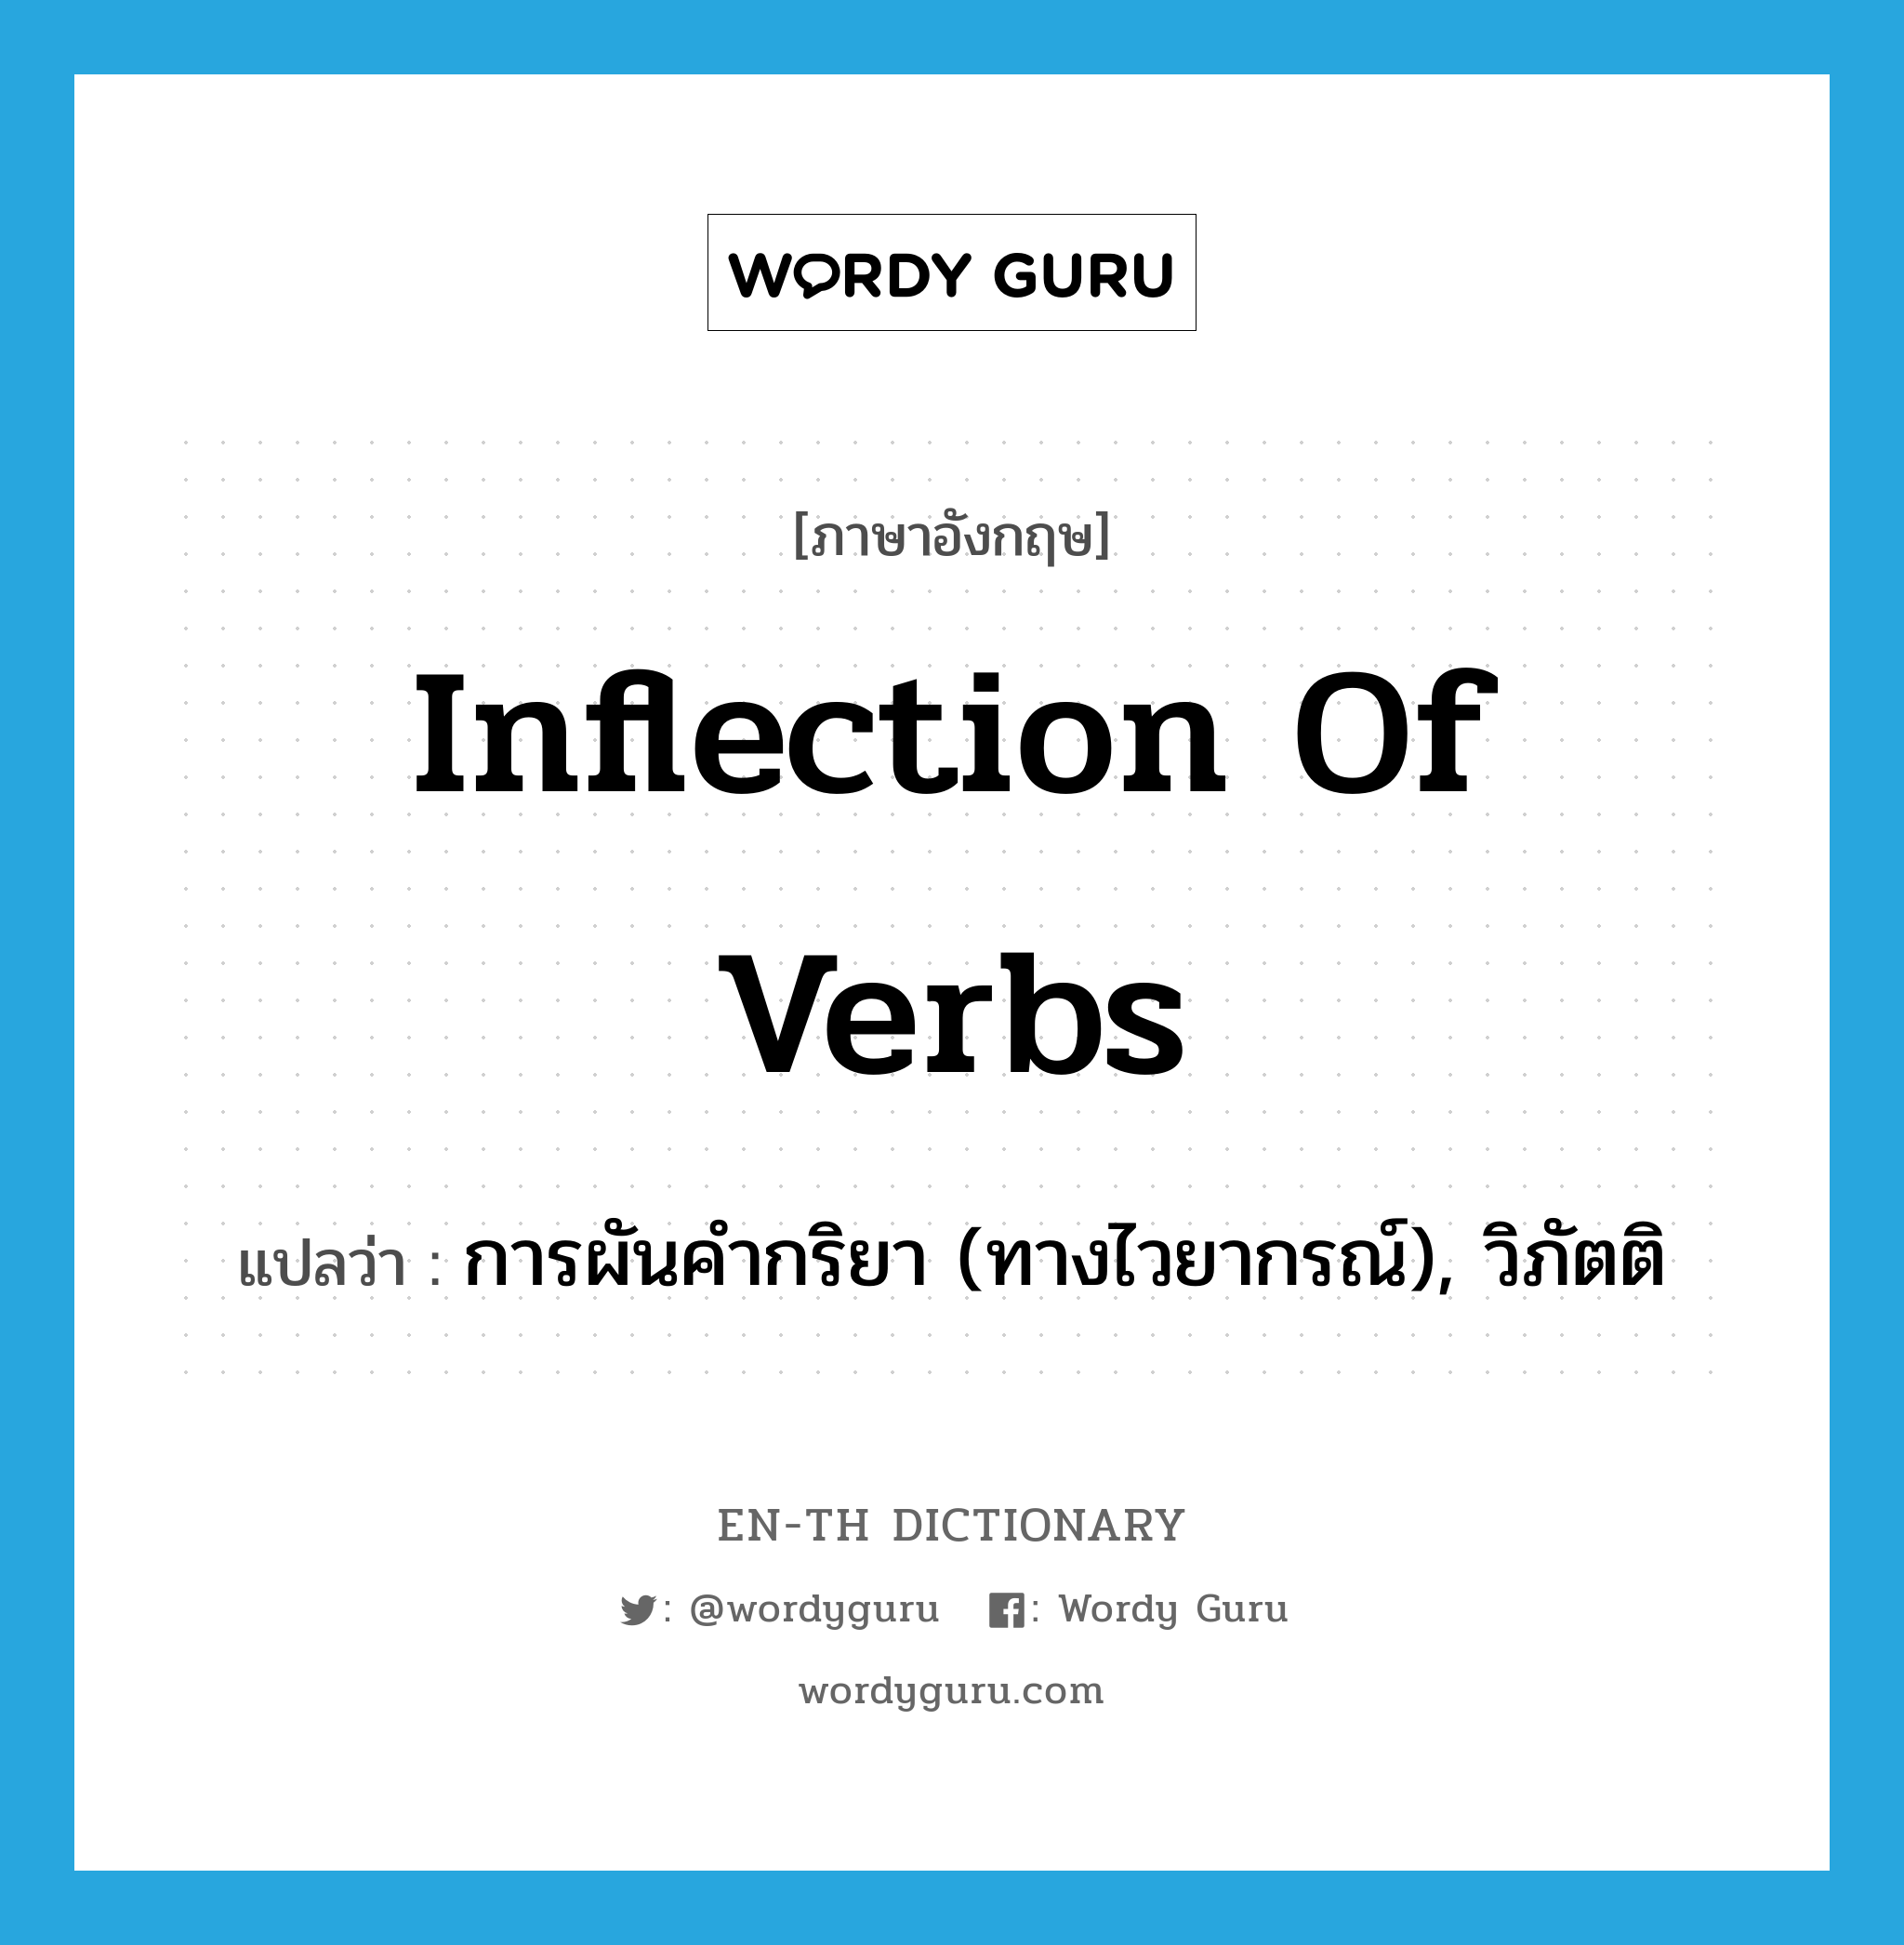 inflection of verbs แปลว่า?, คำศัพท์ภาษาอังกฤษ inflection of verbs แปลว่า การผันคำกริยา (ทางไวยากรณ์), วิภัตติ ประเภท N หมวด N